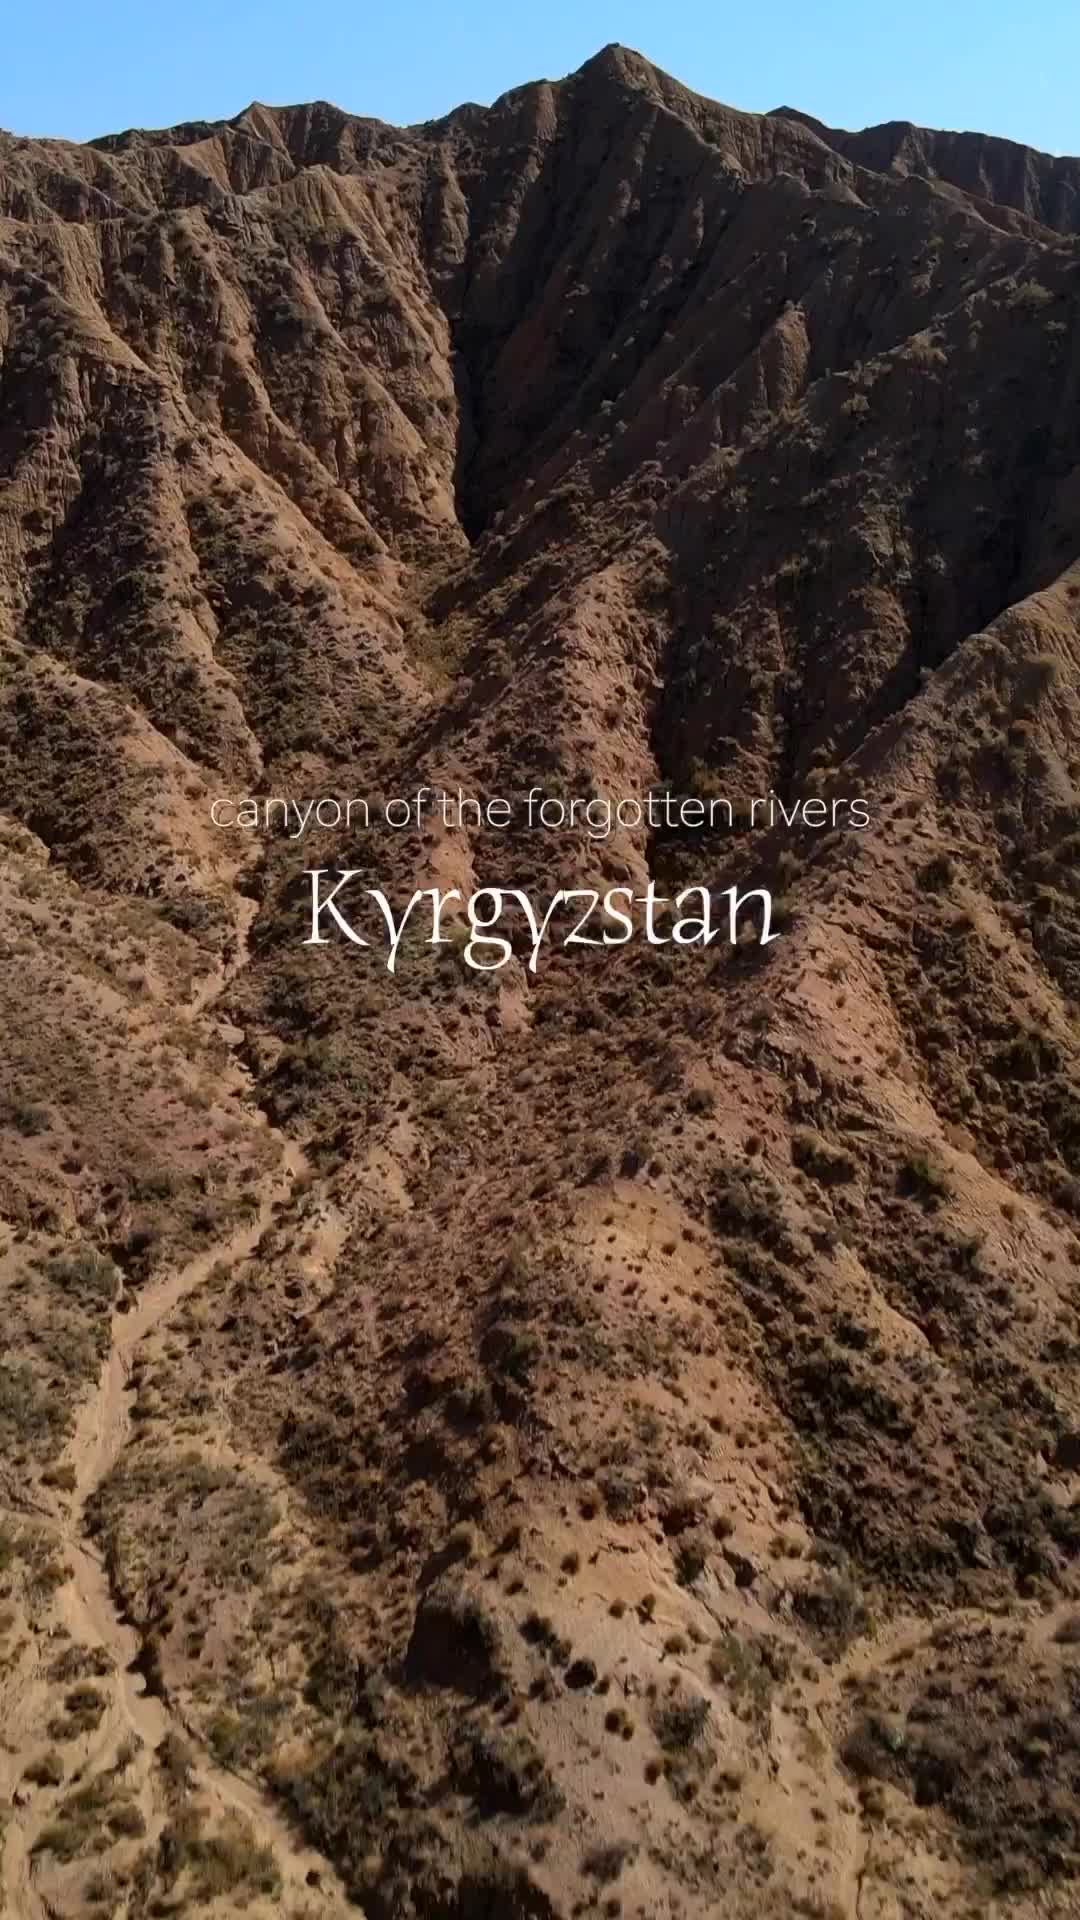 Discover Kyrgyzstan’s Hidden Canyon of Forgotten Rivers